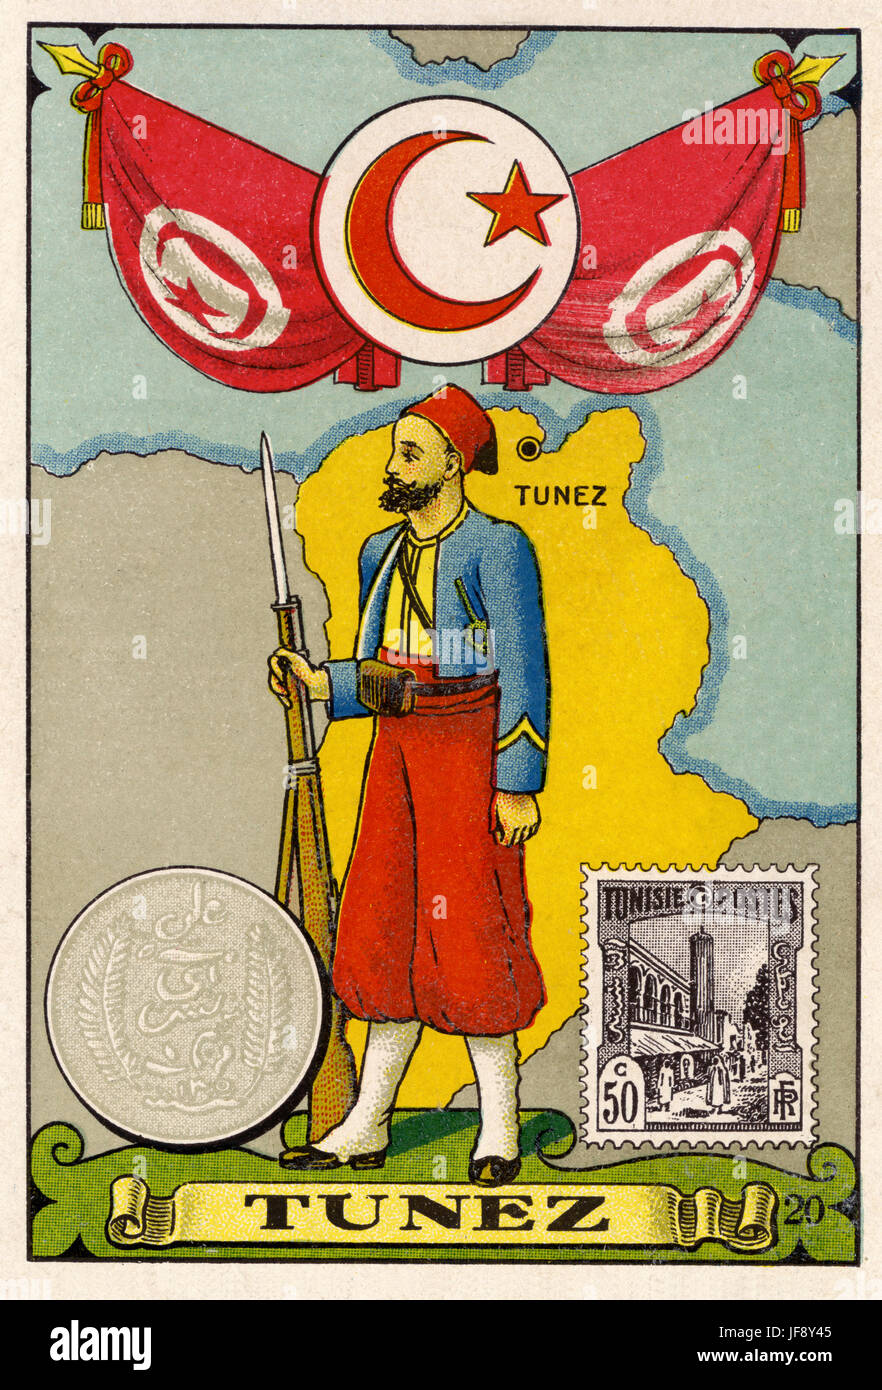 La Tunisie. Illustration avec carte de la Tunisie Tunis, montrant un timbre Tunisien, une pièce de monnaie dinar et un soldat zouave. Fin du 19e / début 20e siècle carte postale Banque D'Images